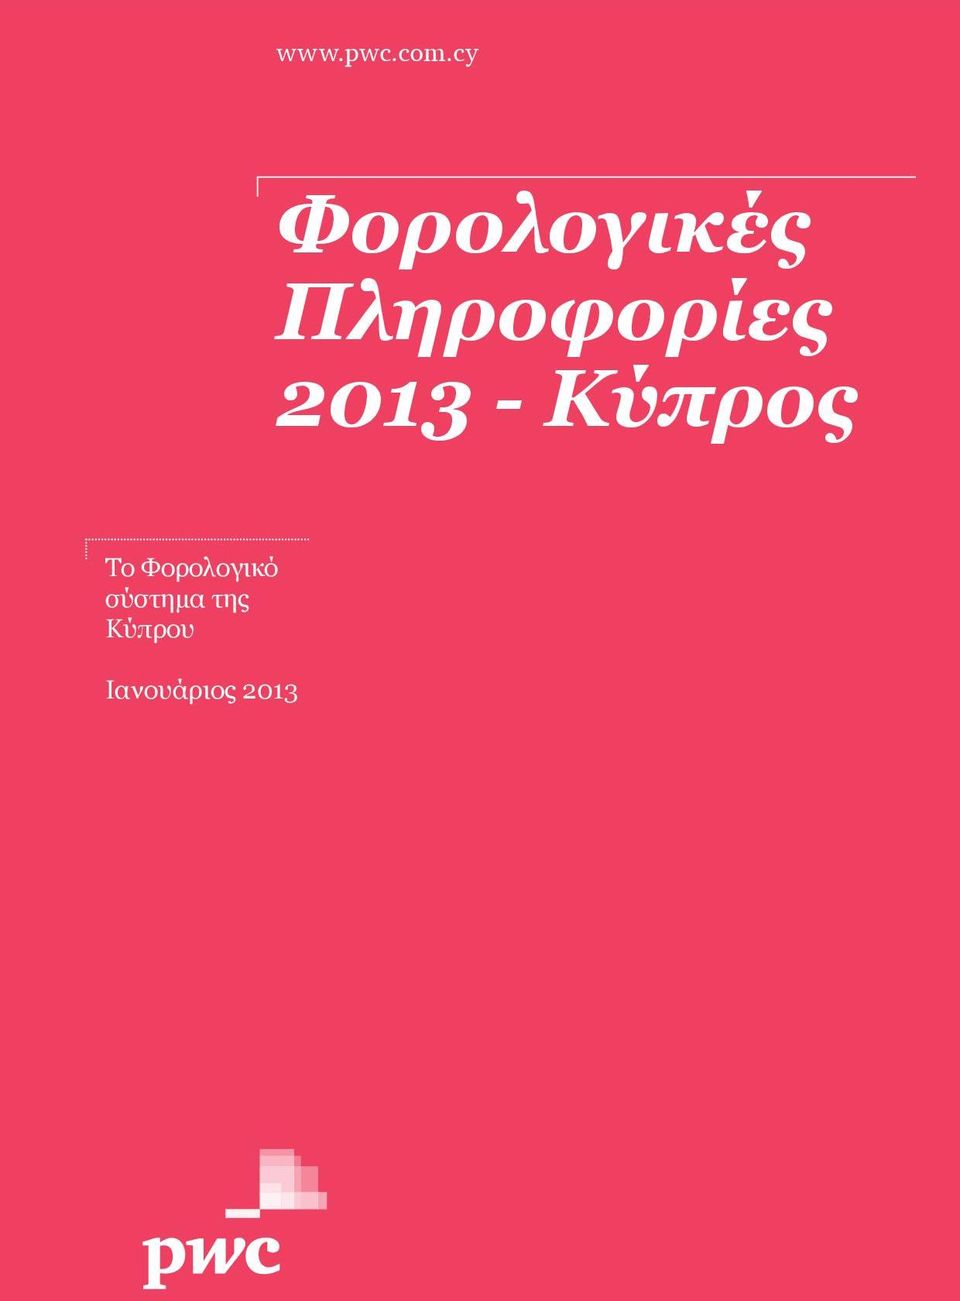 Πληροφορίες 2013 - Κύπρος